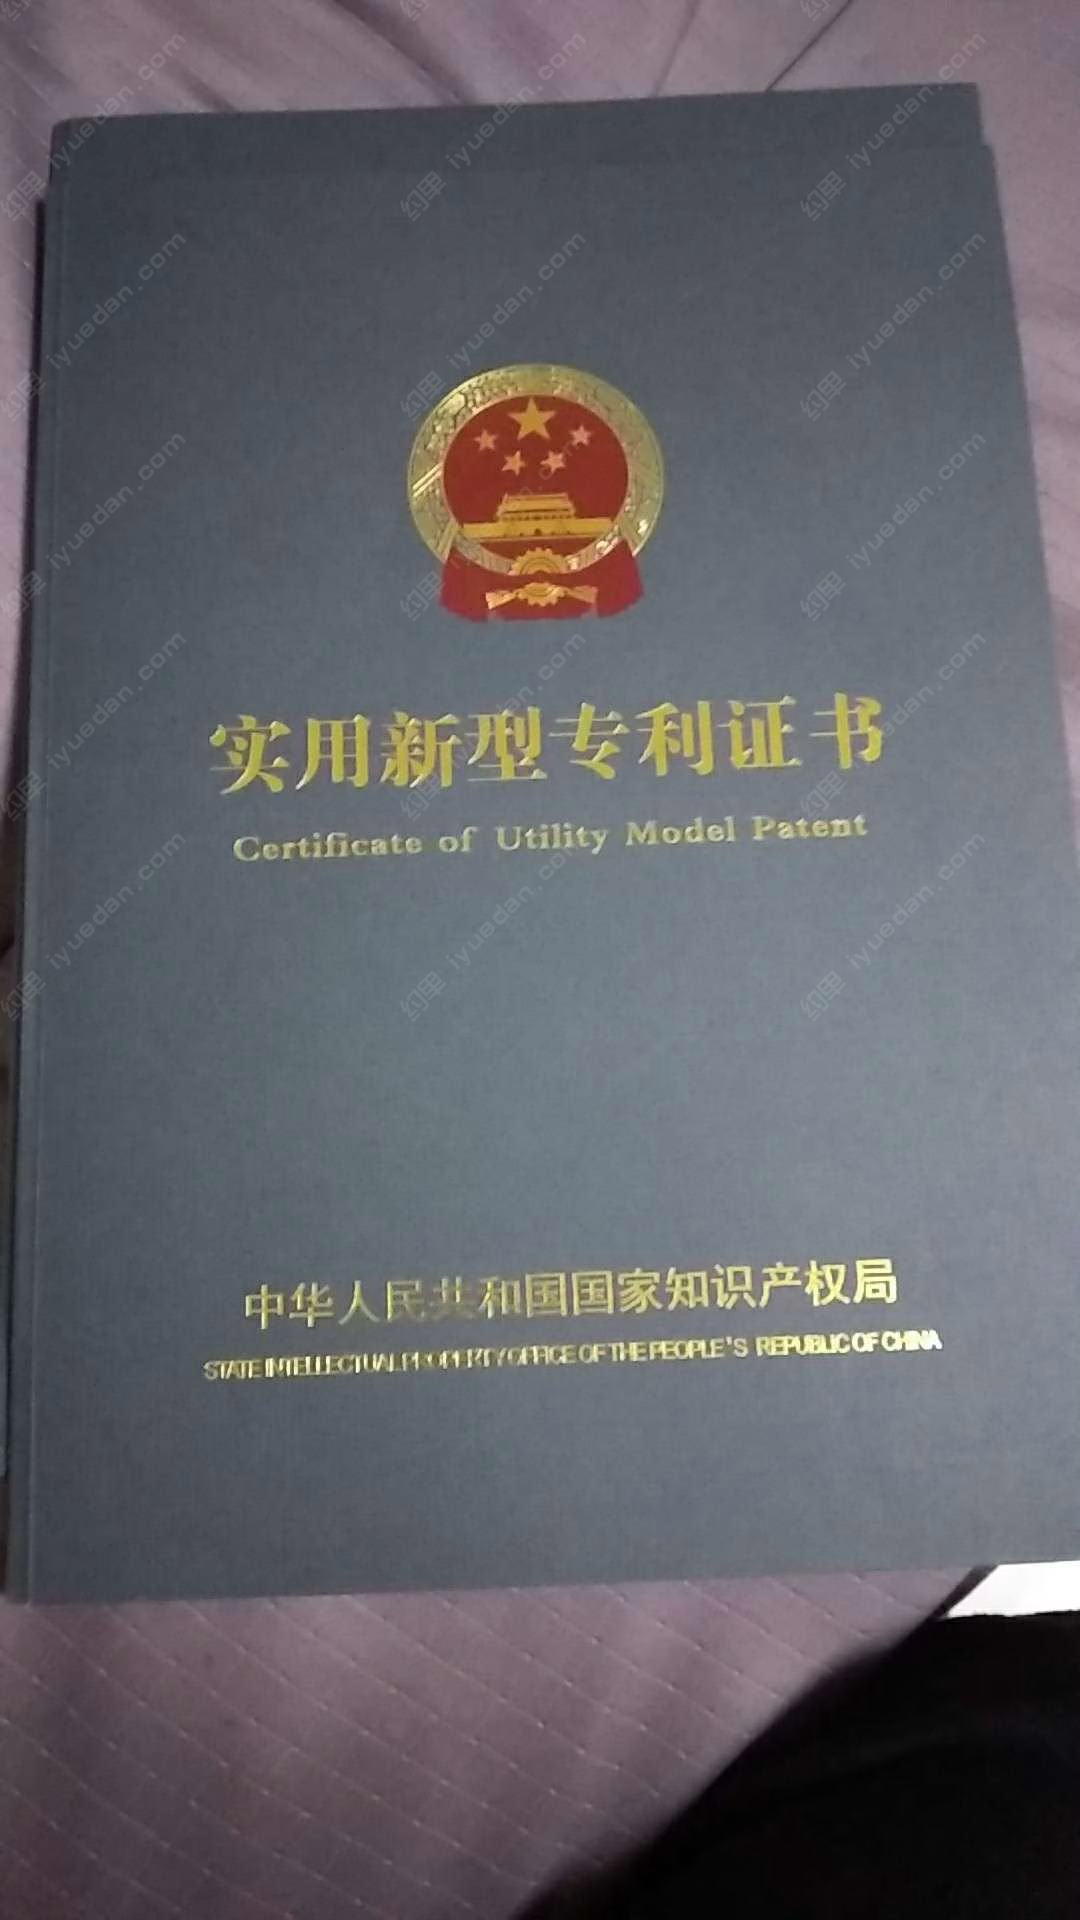 蔡玉东-专利商标